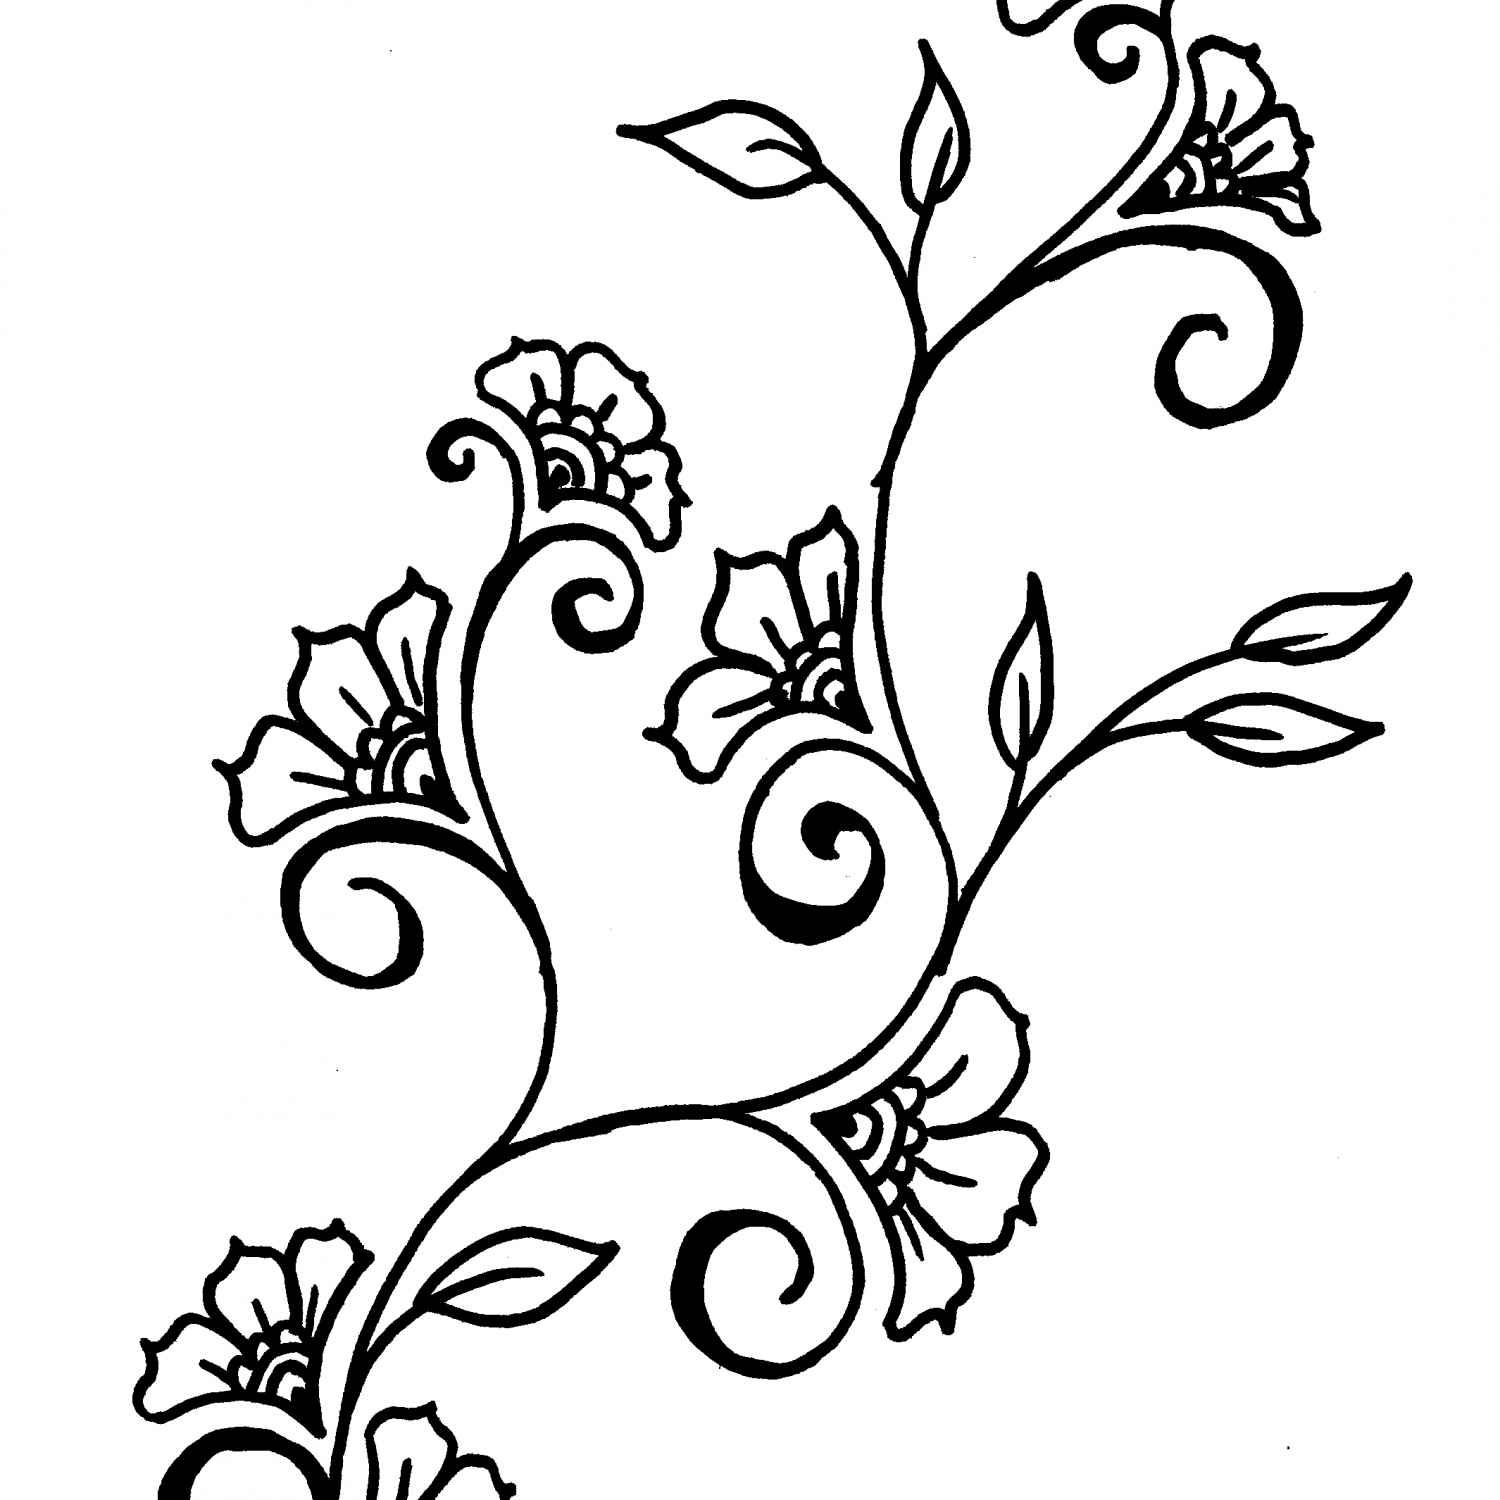 Flower Vine Drawing at GetDrawings | Free download